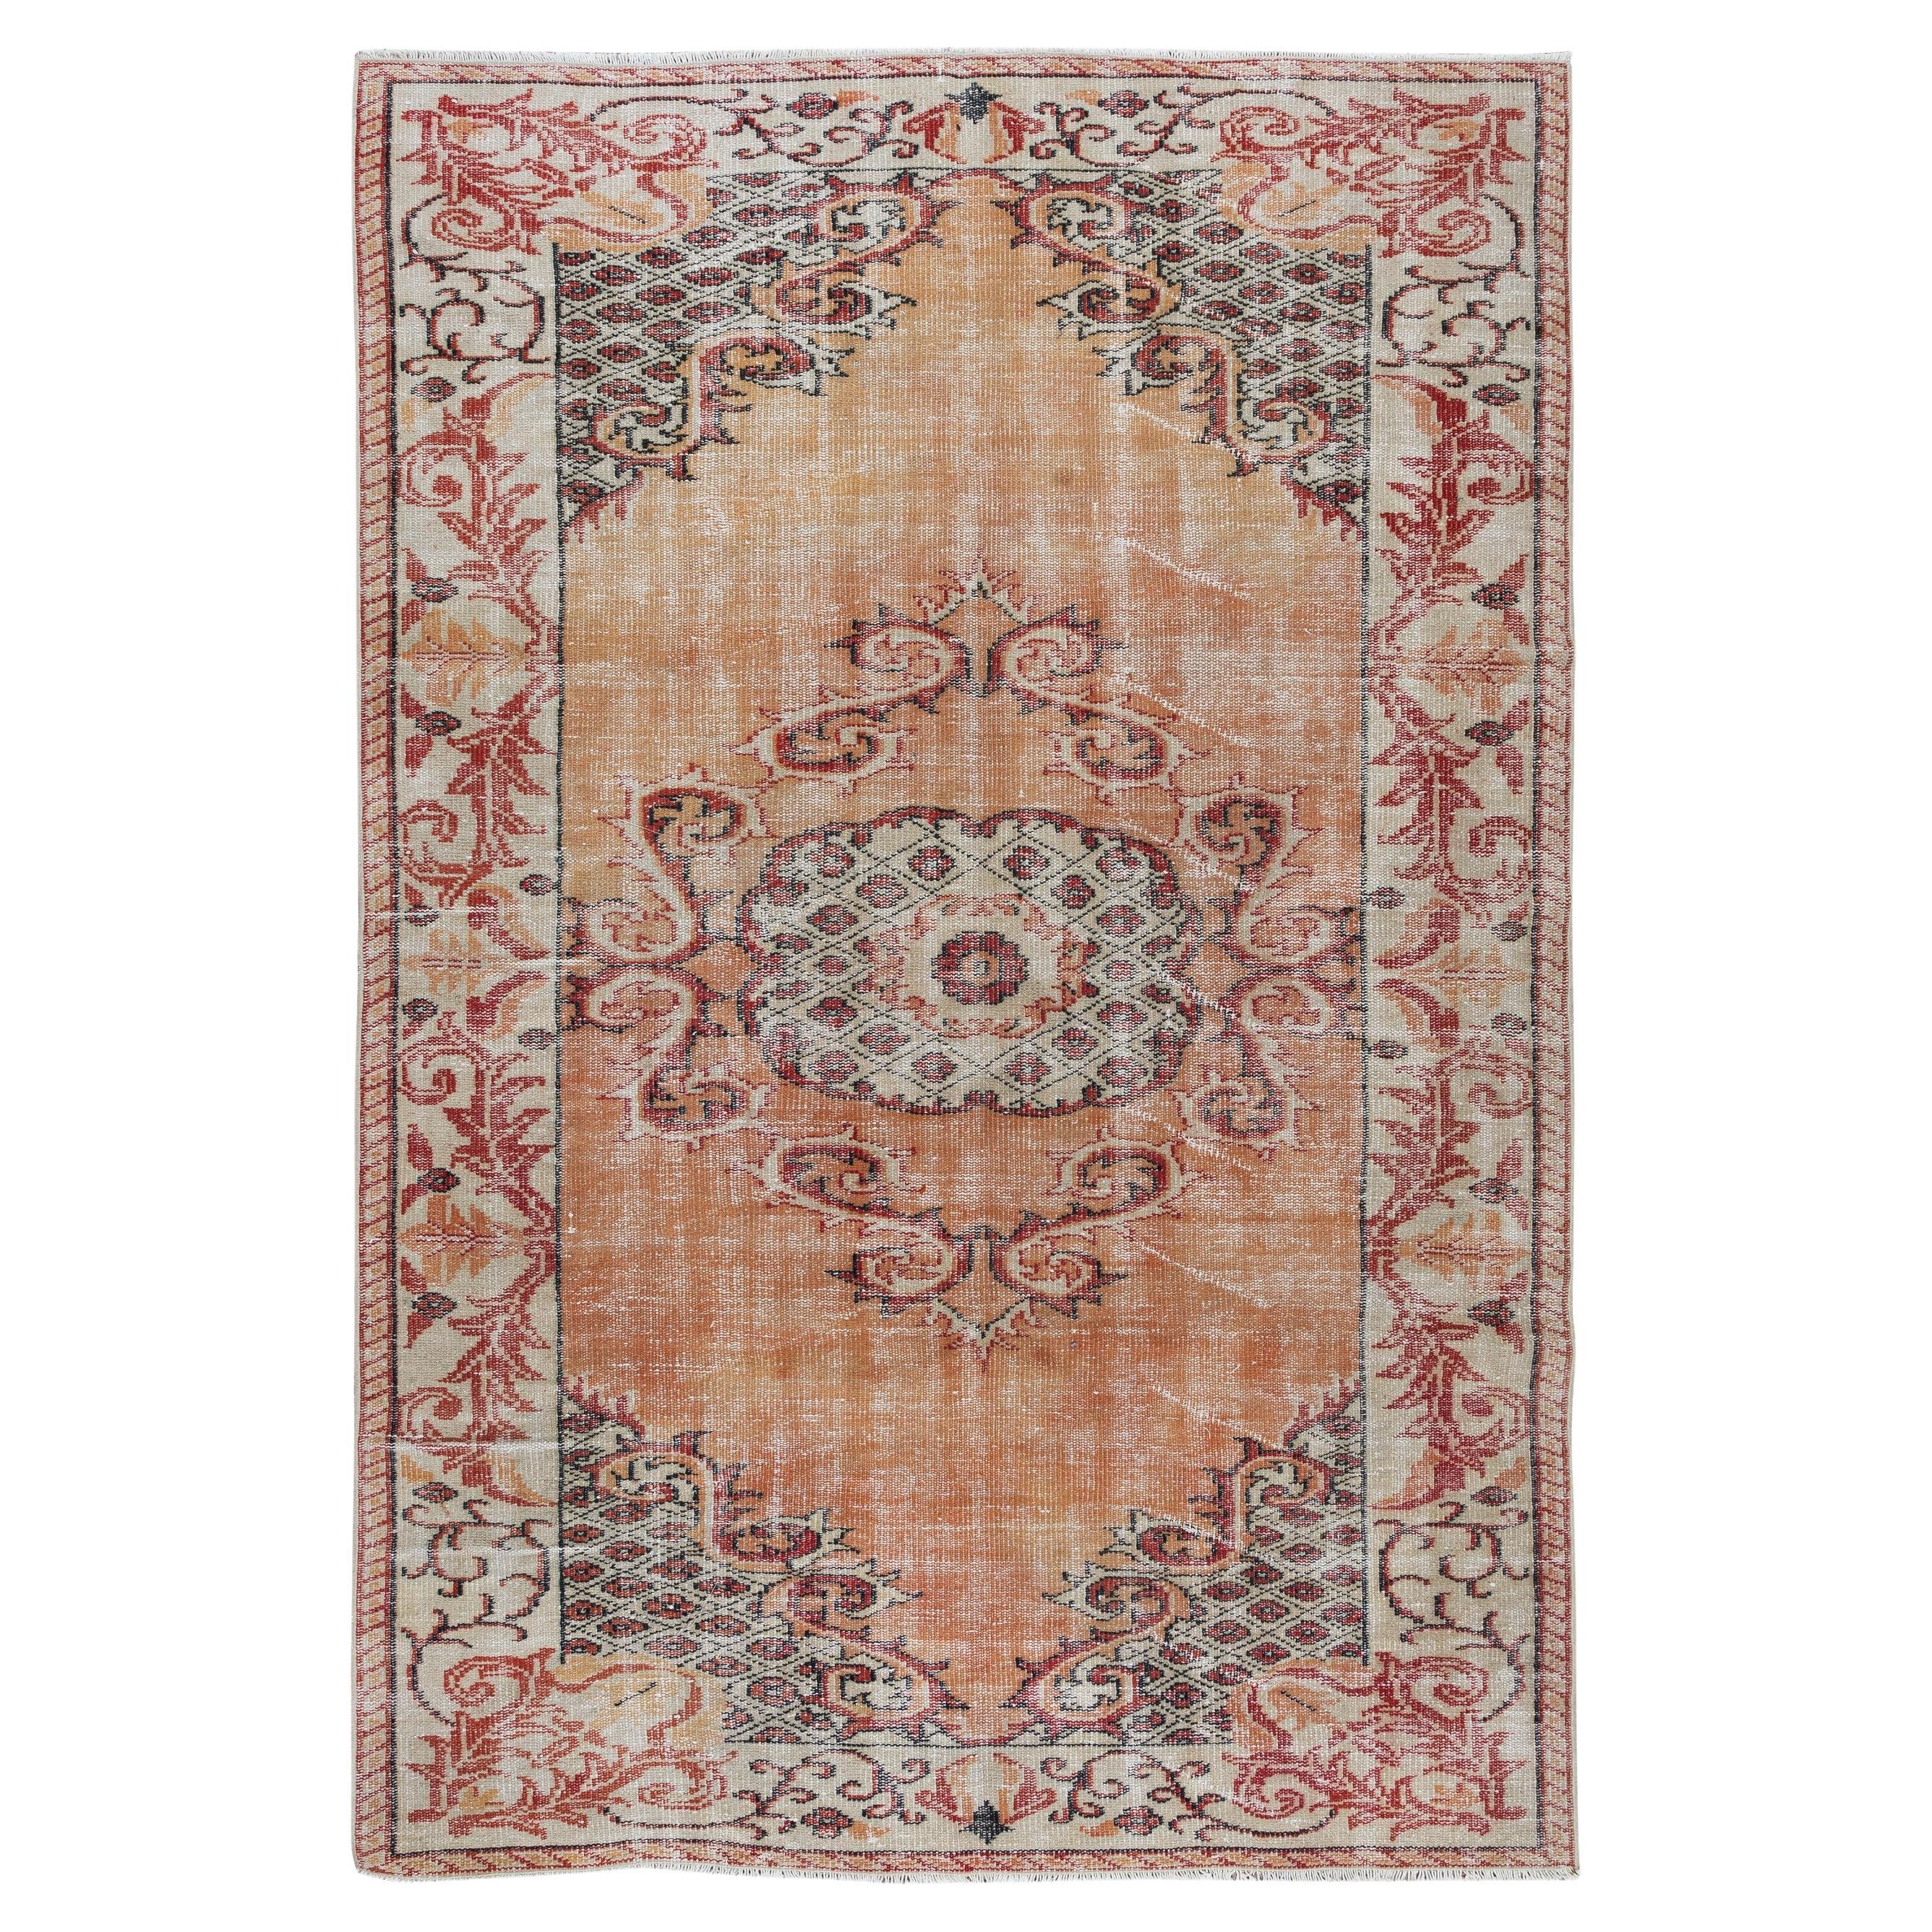 handgeknüpfter orangefarbener Teppich, Vintage-Wollteppich aus der Türkei, 6x8.7 m